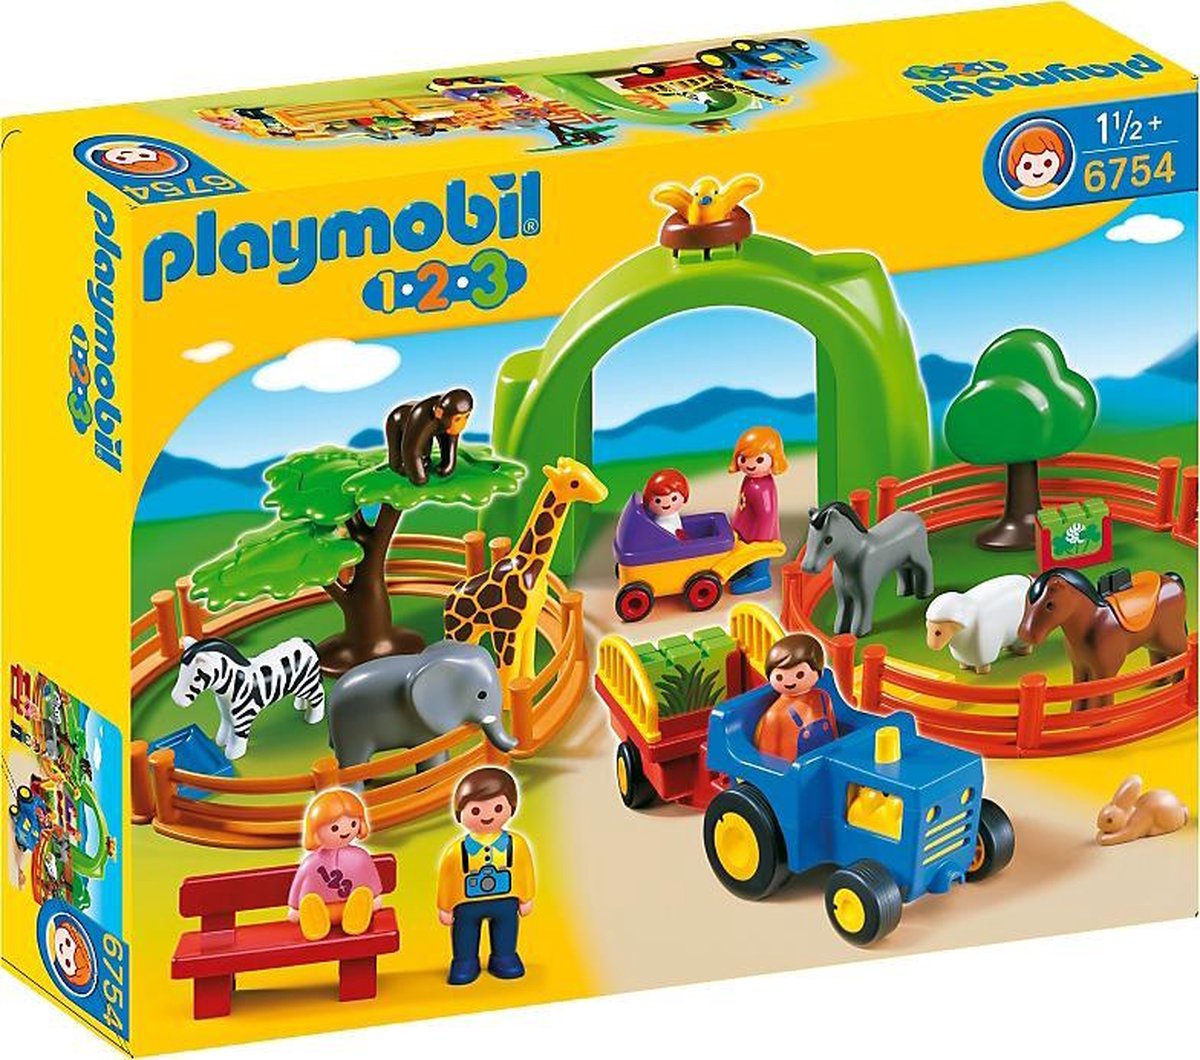 Playmobil 1.2.3 70129 Maison familiale - Playmobil - Achat & prix